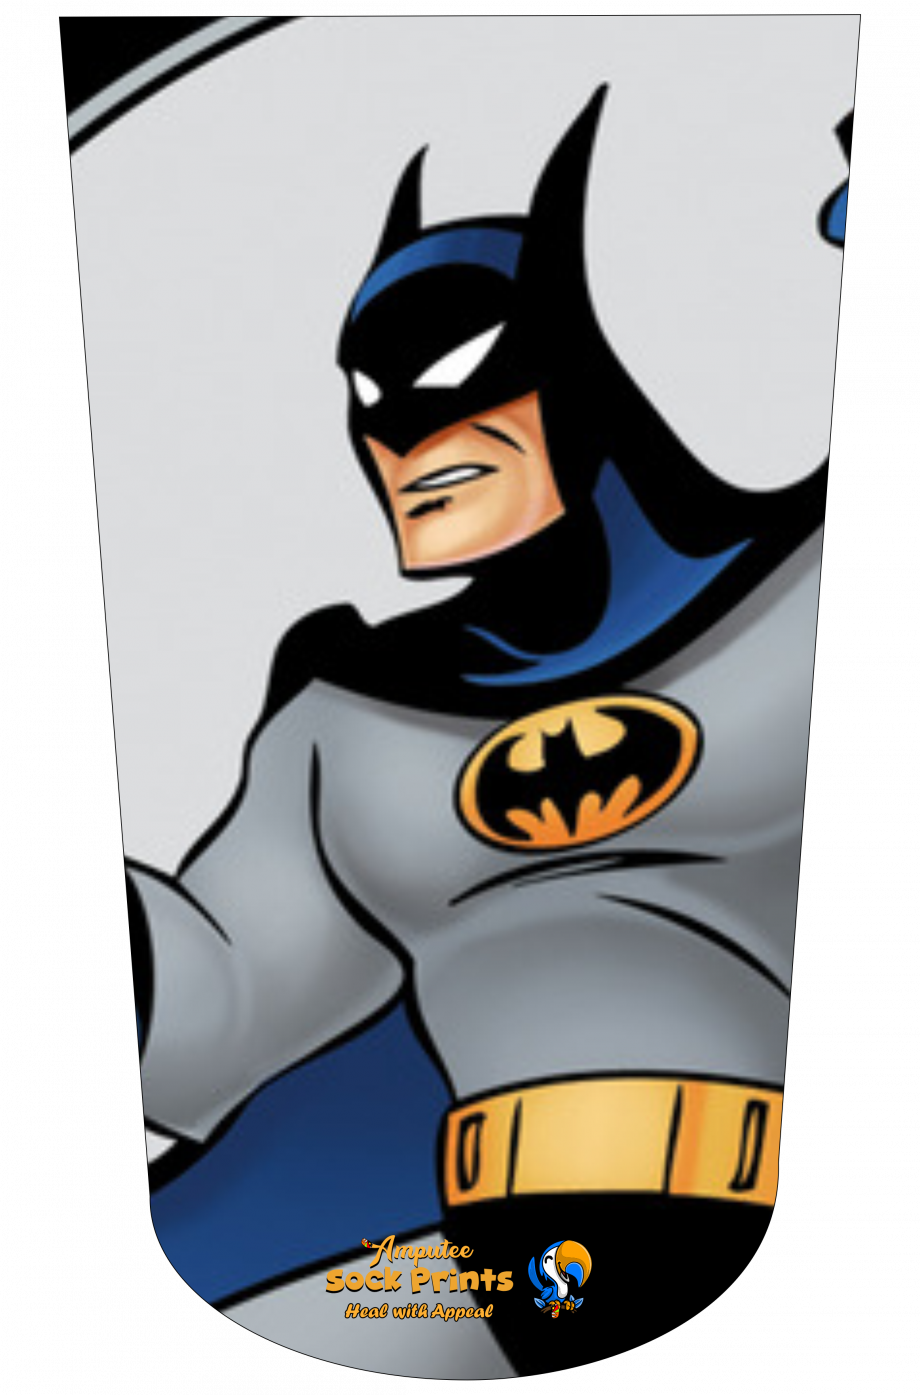 Batman V1